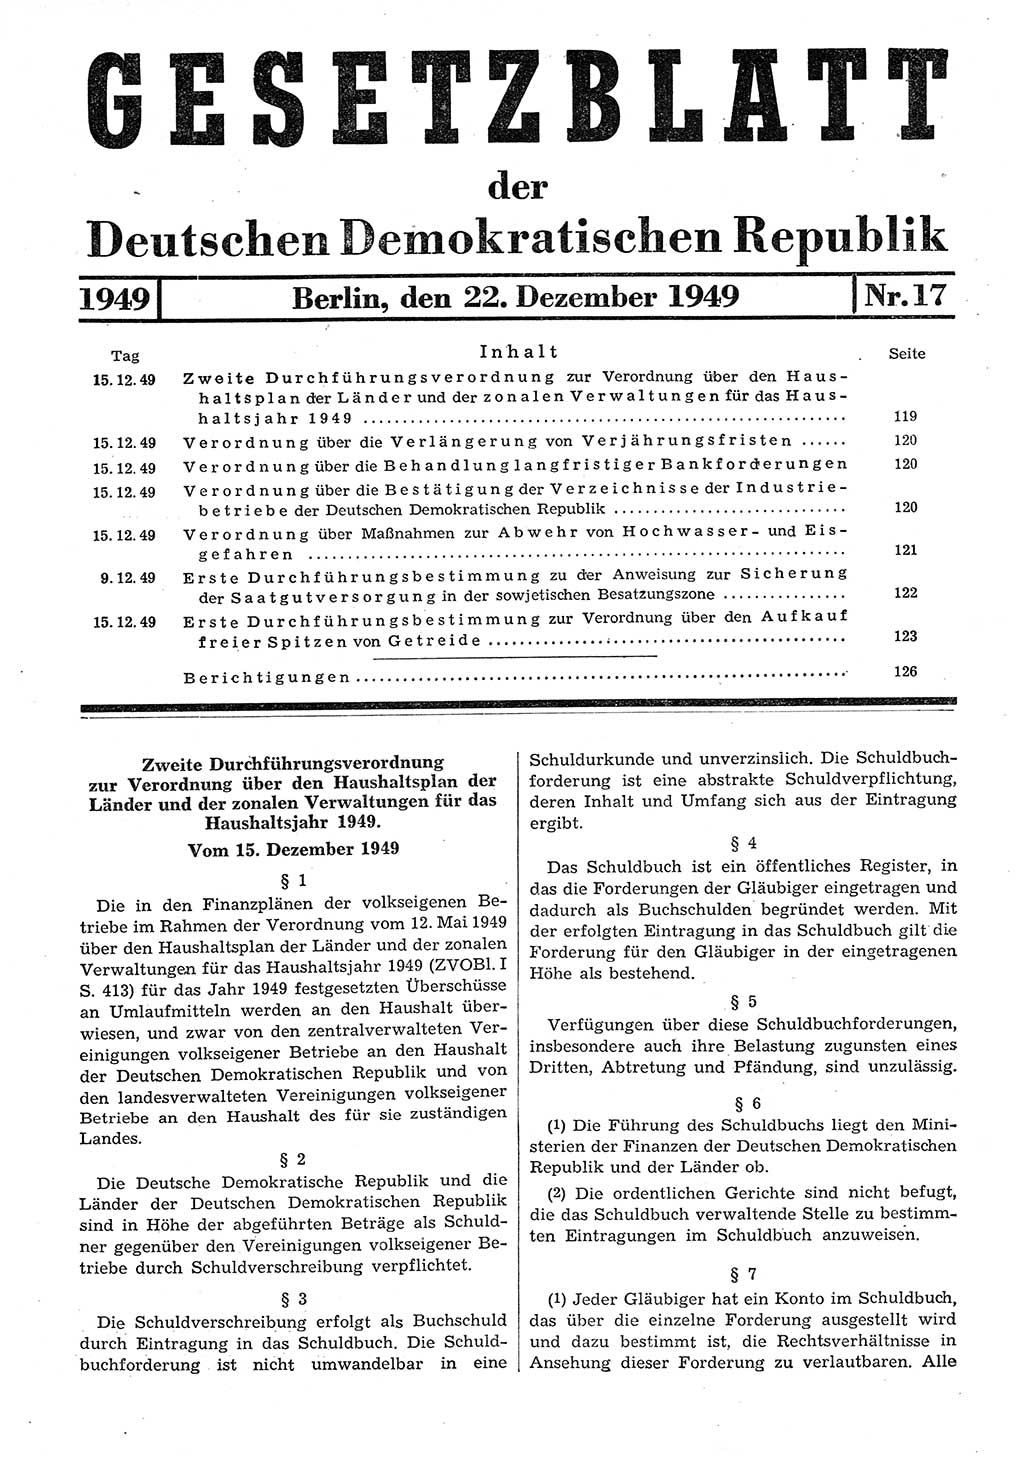 Gesetzblatt (GBl.) der Deutschen Demokratischen Republik (DDR) 1949, Seite 119 (GBl. DDR 1949, S. 119)